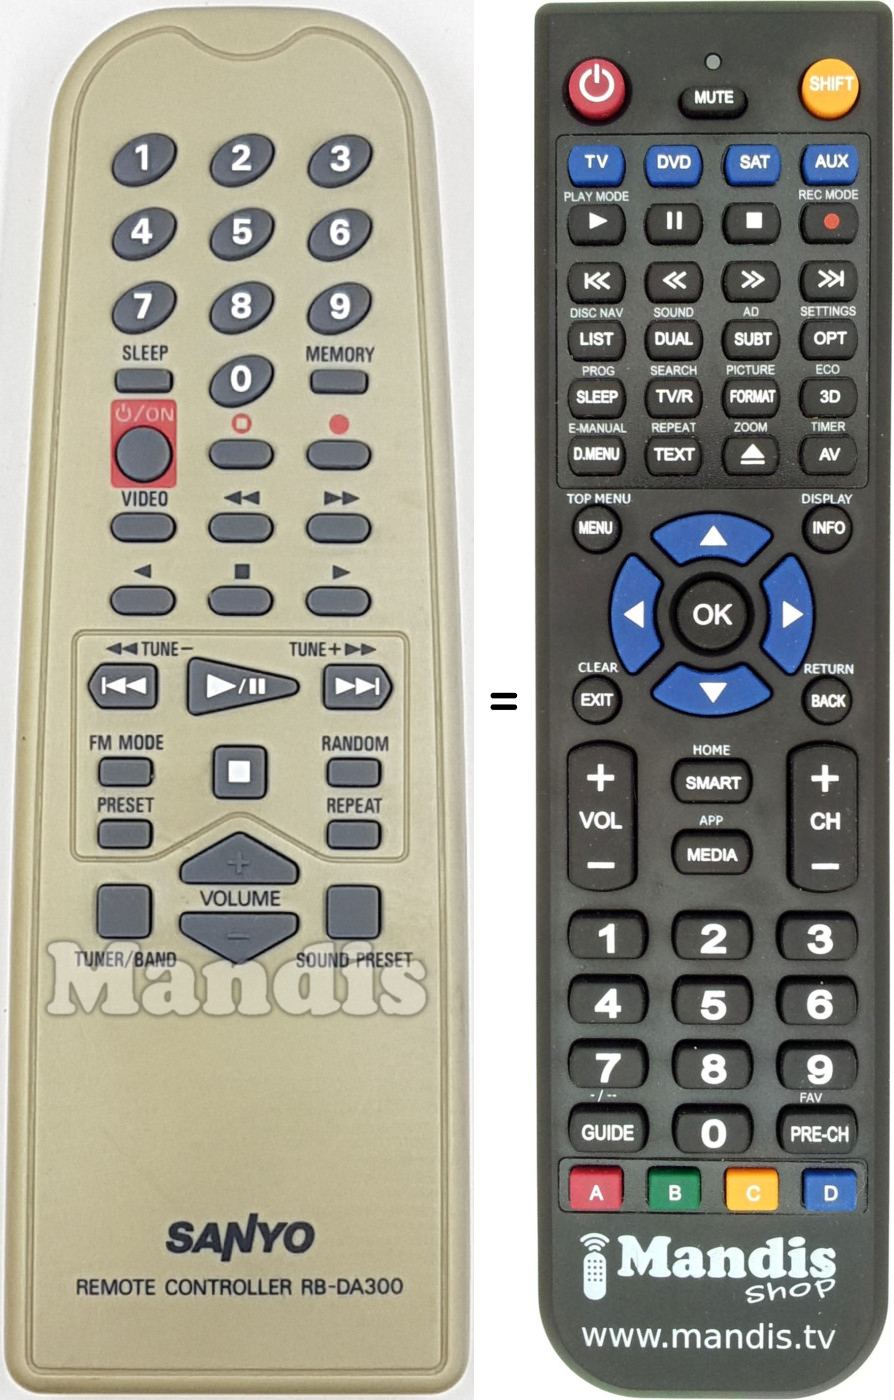 Replacement remote control RB-DA300